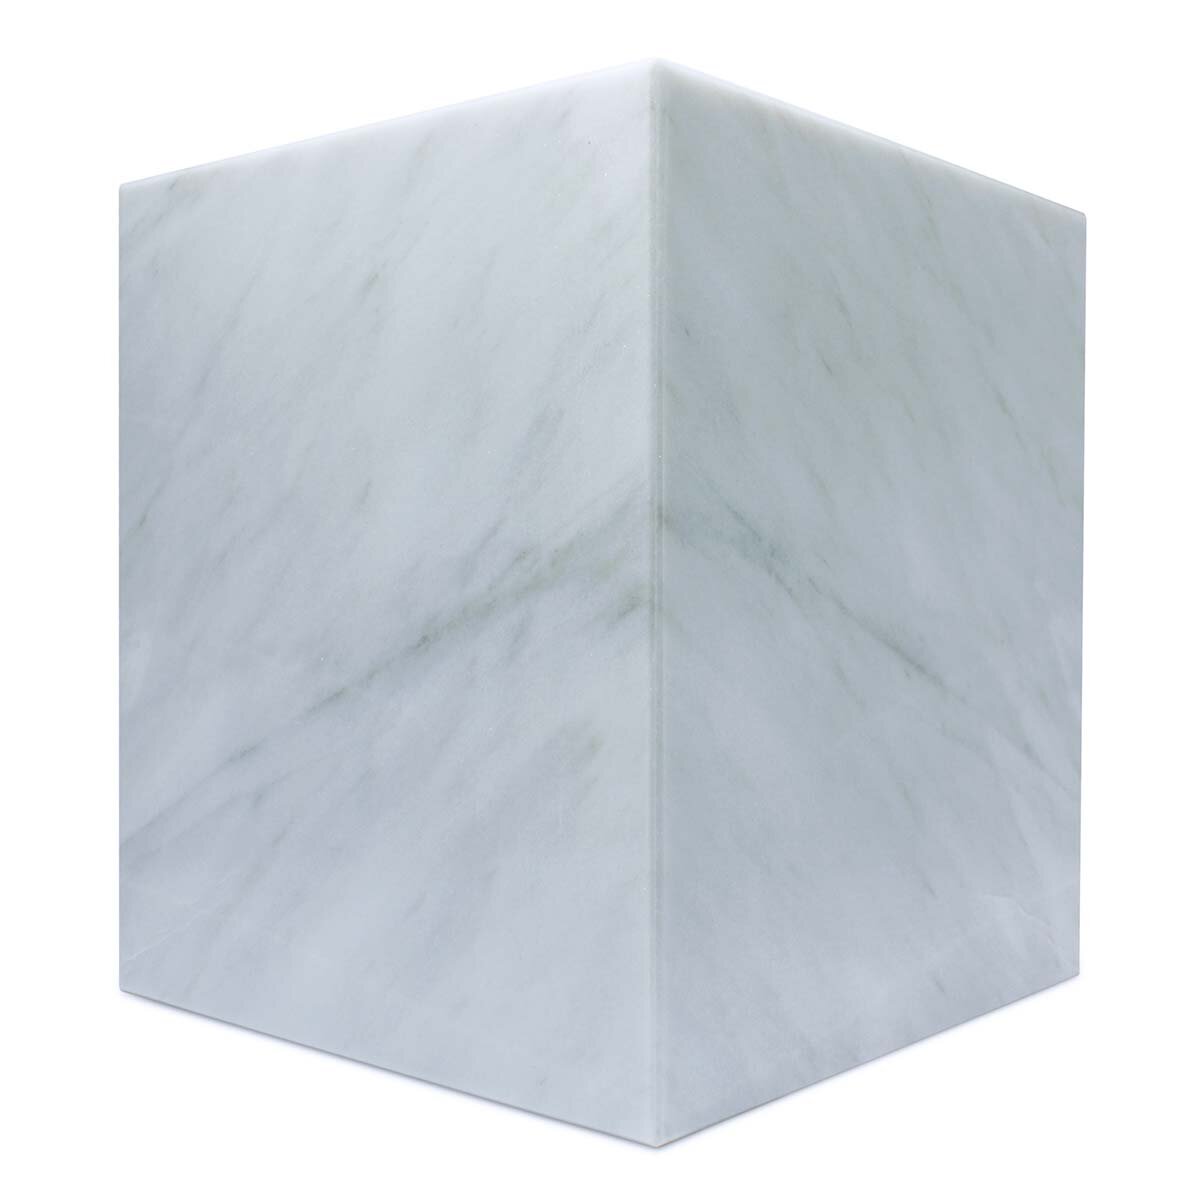 Luhom Juego de 3 Cubos Multiusos de Mármol Blanco